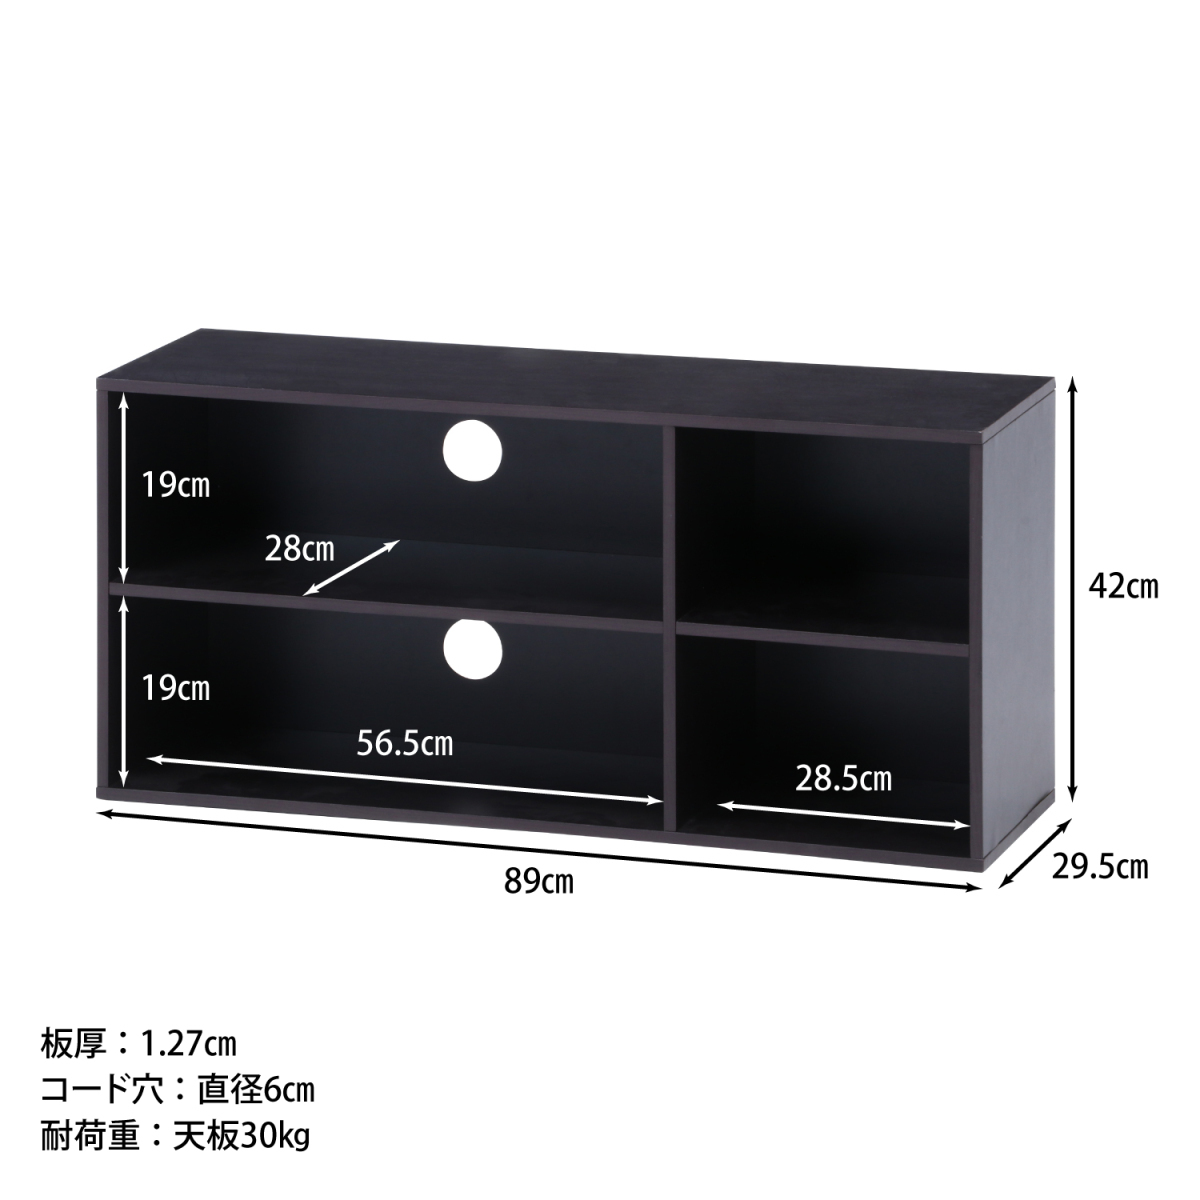  ТВ-тумба телевизор подставка темно-коричневый ширина 89cm[ новый товар ][ бесплатная доставка ]( Hokkaido Okinawa отдаленный остров доставка отдельно )